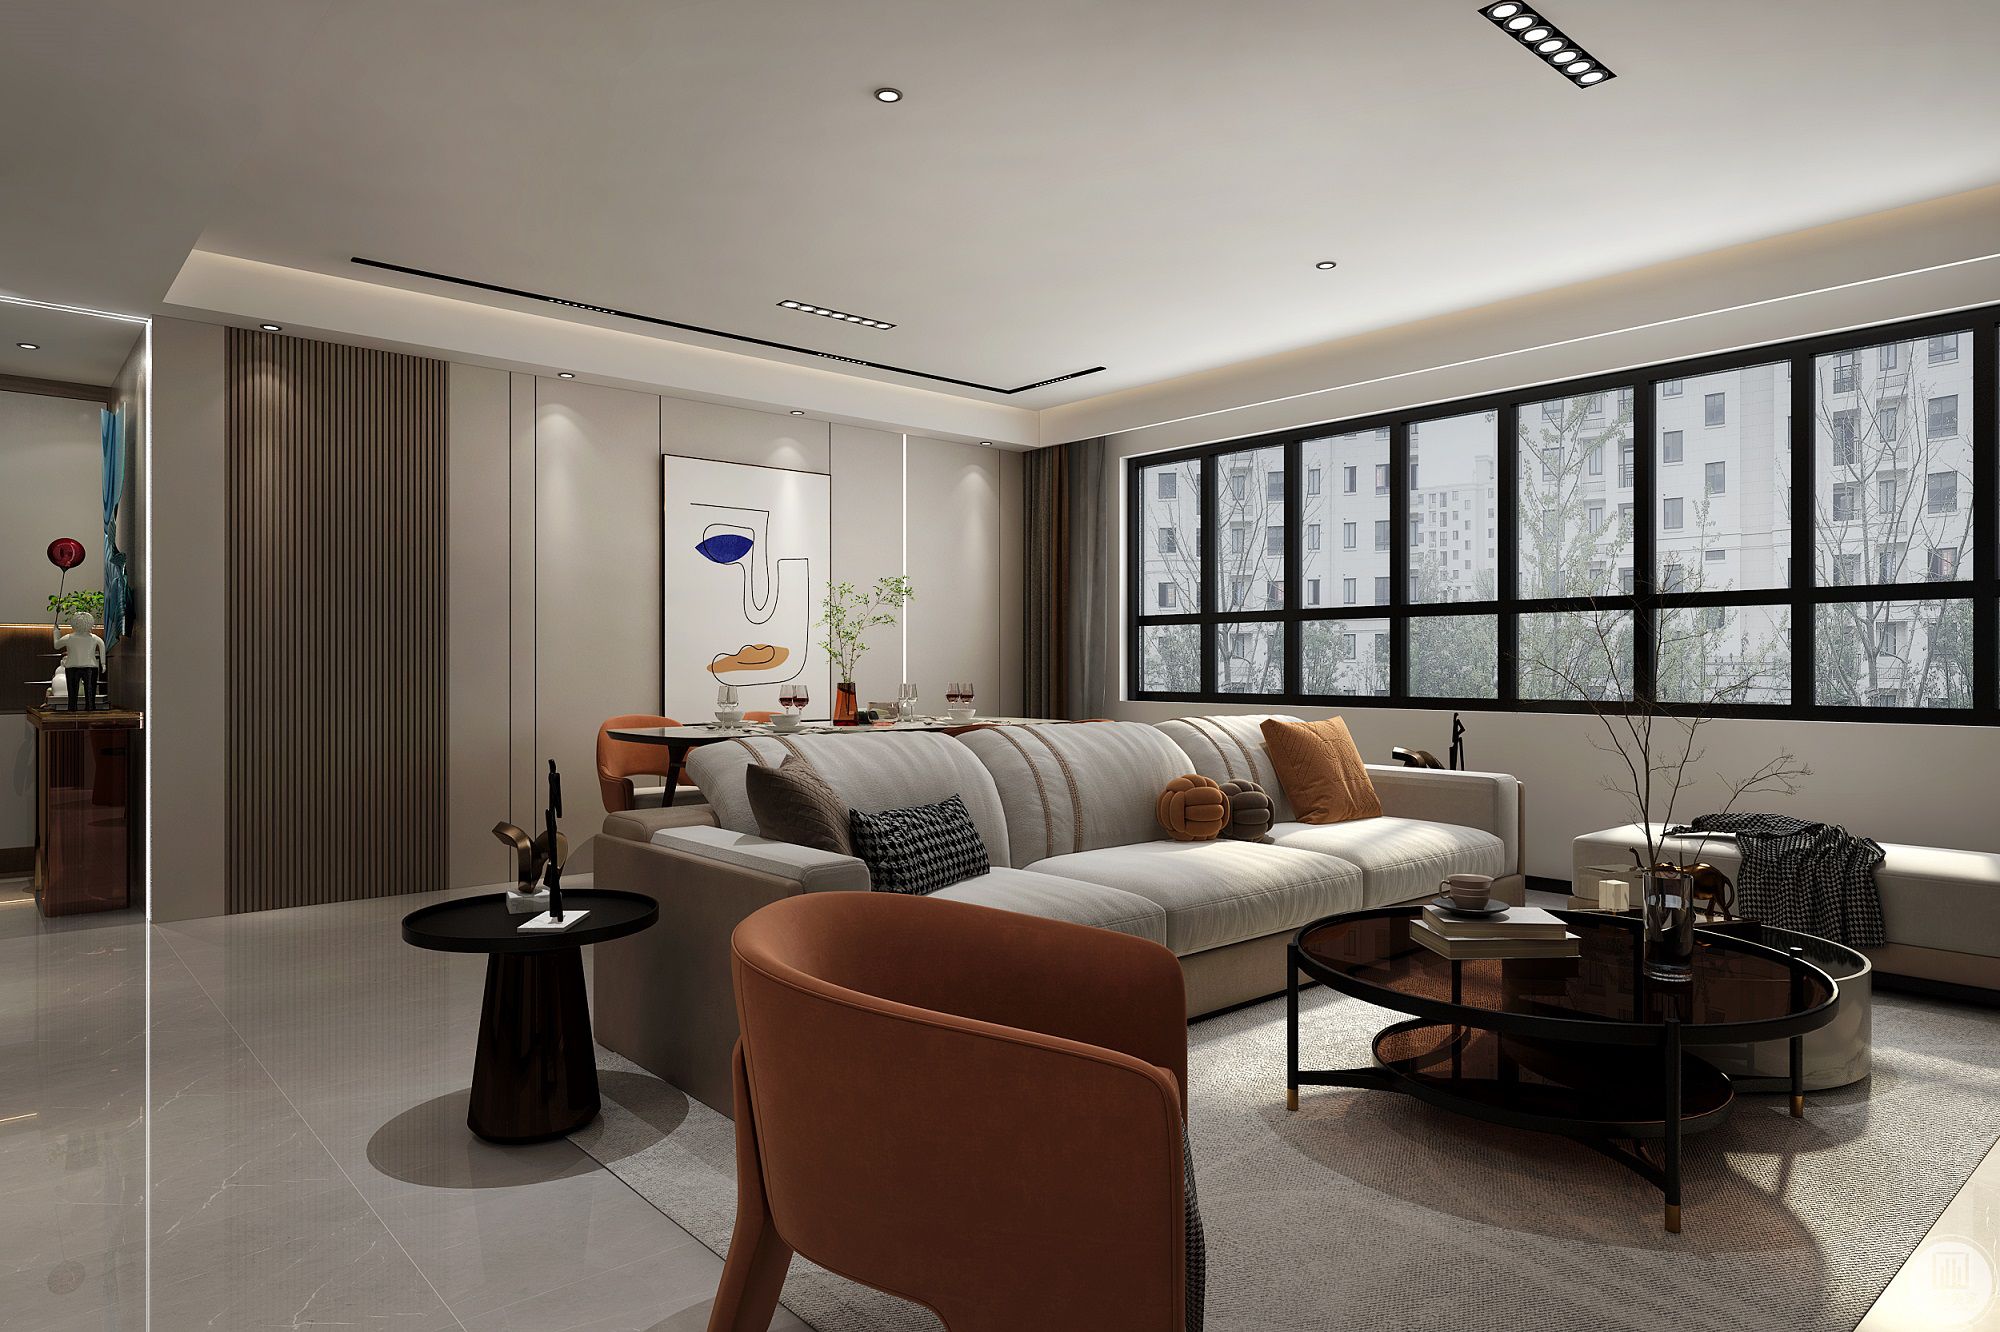 客厅整体以主灯设计，平行部光，合理分配光源，光线透过纱帘照射进屋内，带来温暖舒适的环境。